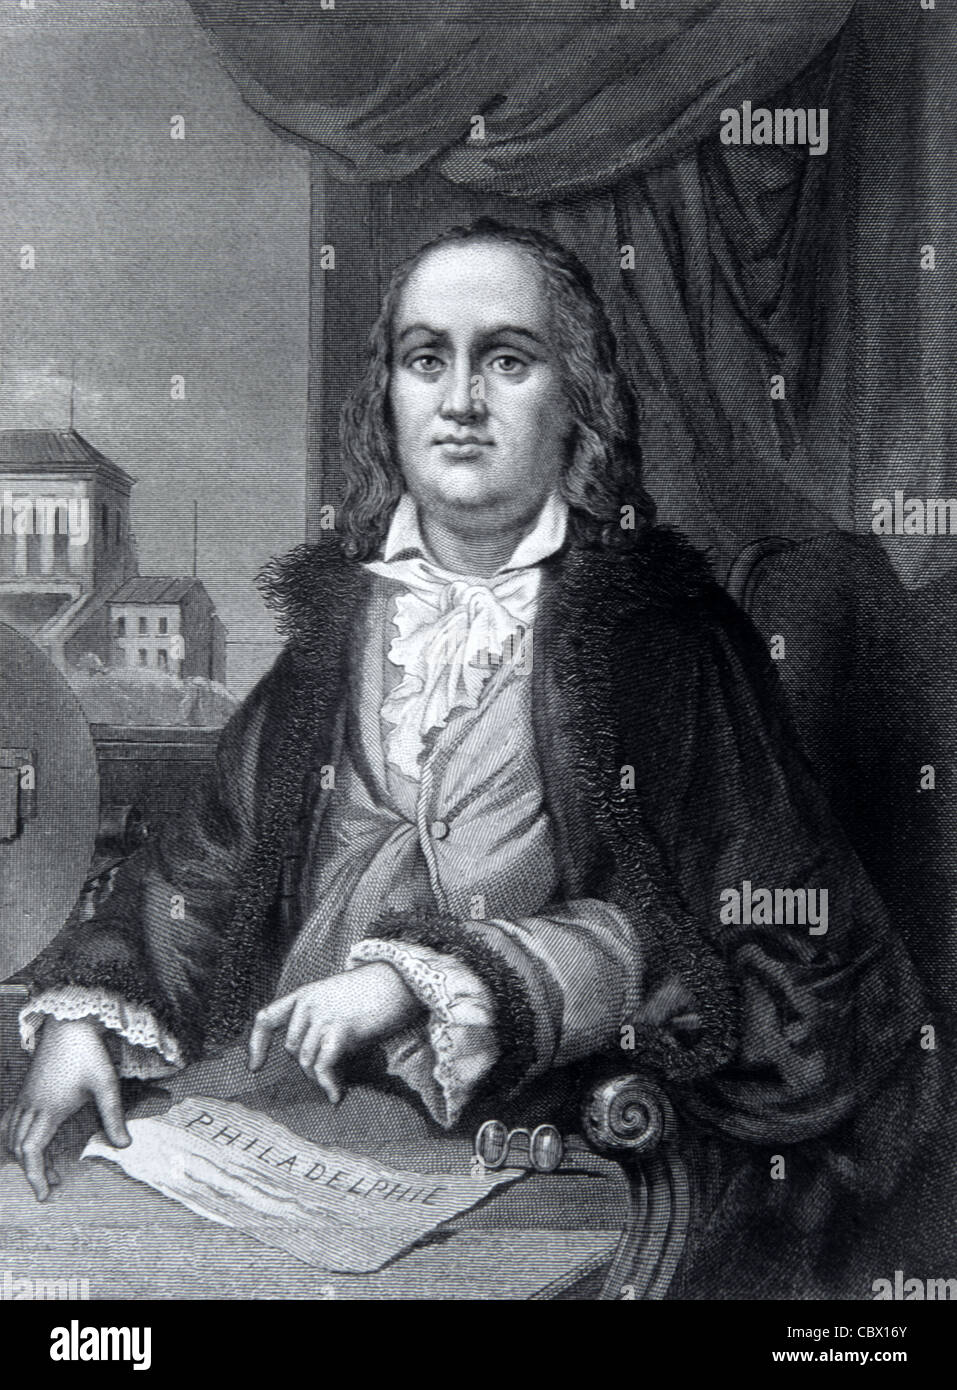 Ritratto di Benjamin Franklin (1706-90), uno dei padri fondatori degli Stati Uniti o dell'America. Incisione c1880 o illustrazione vintage Foto Stock